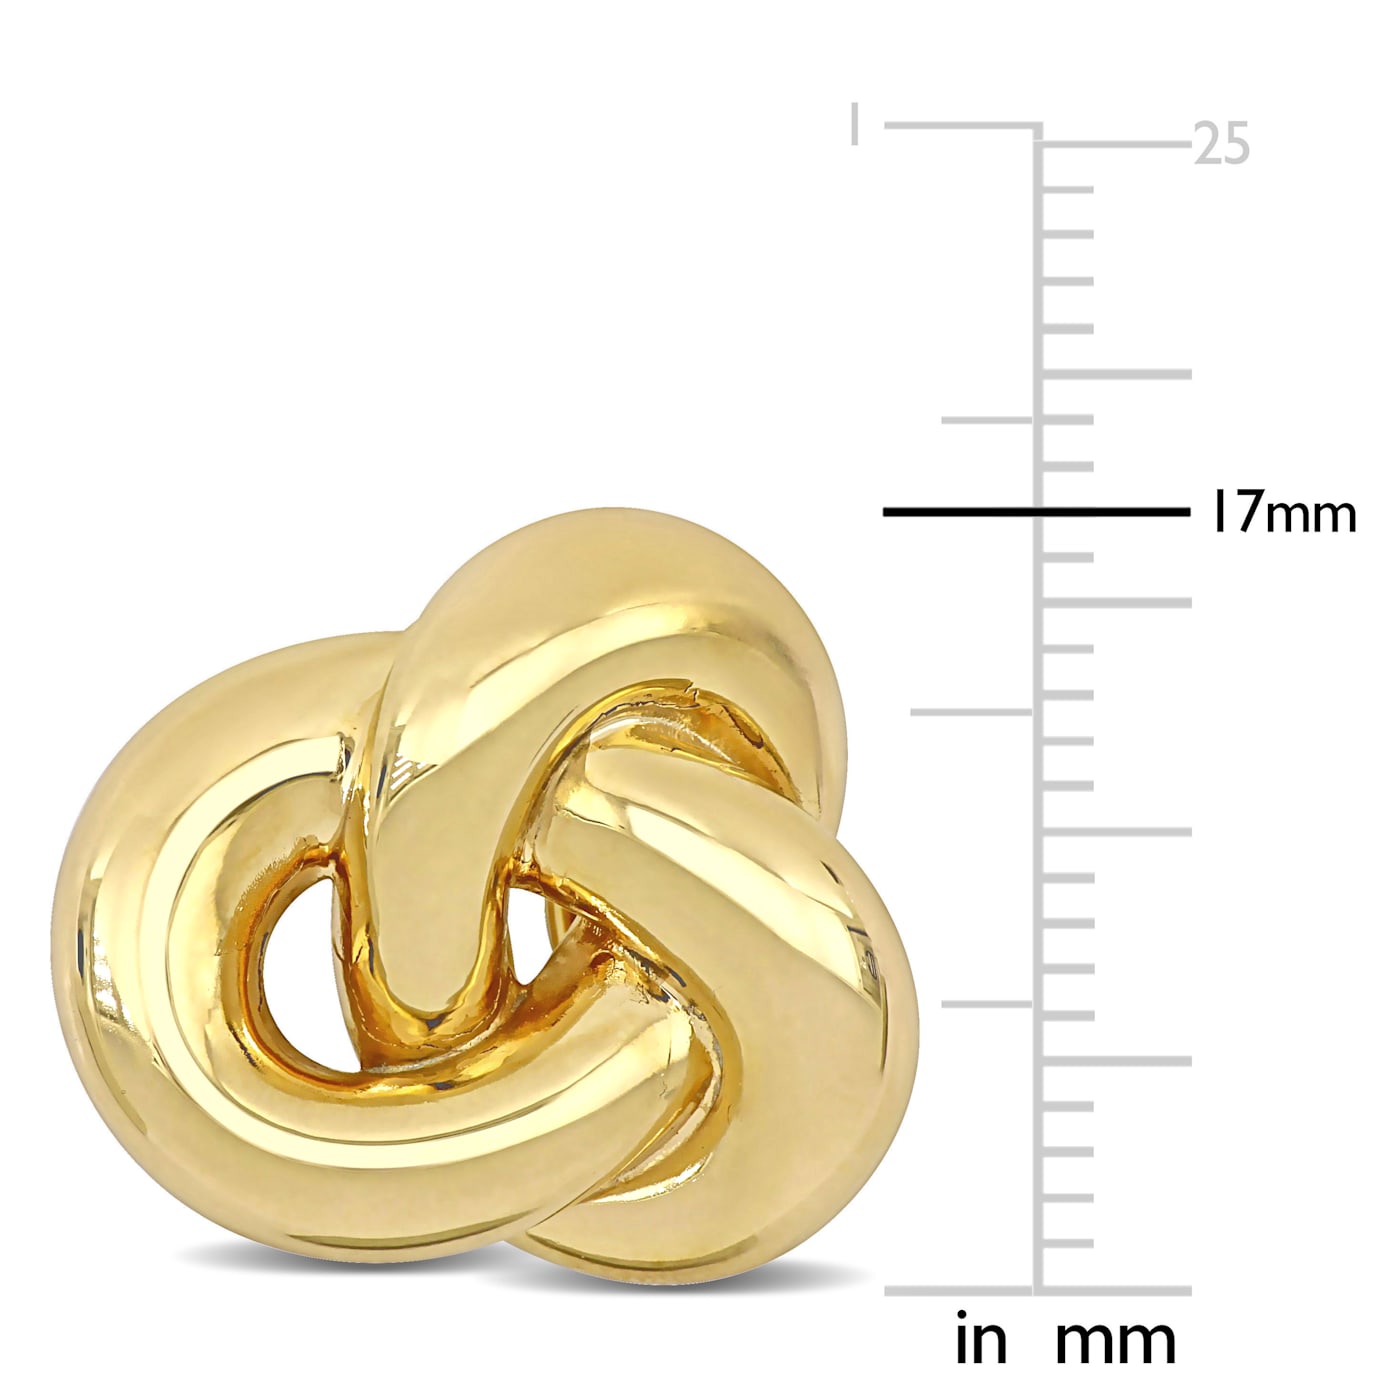 14 Karat Yellow Gold 10 Millimeter Lover's Knot Stud Earrings